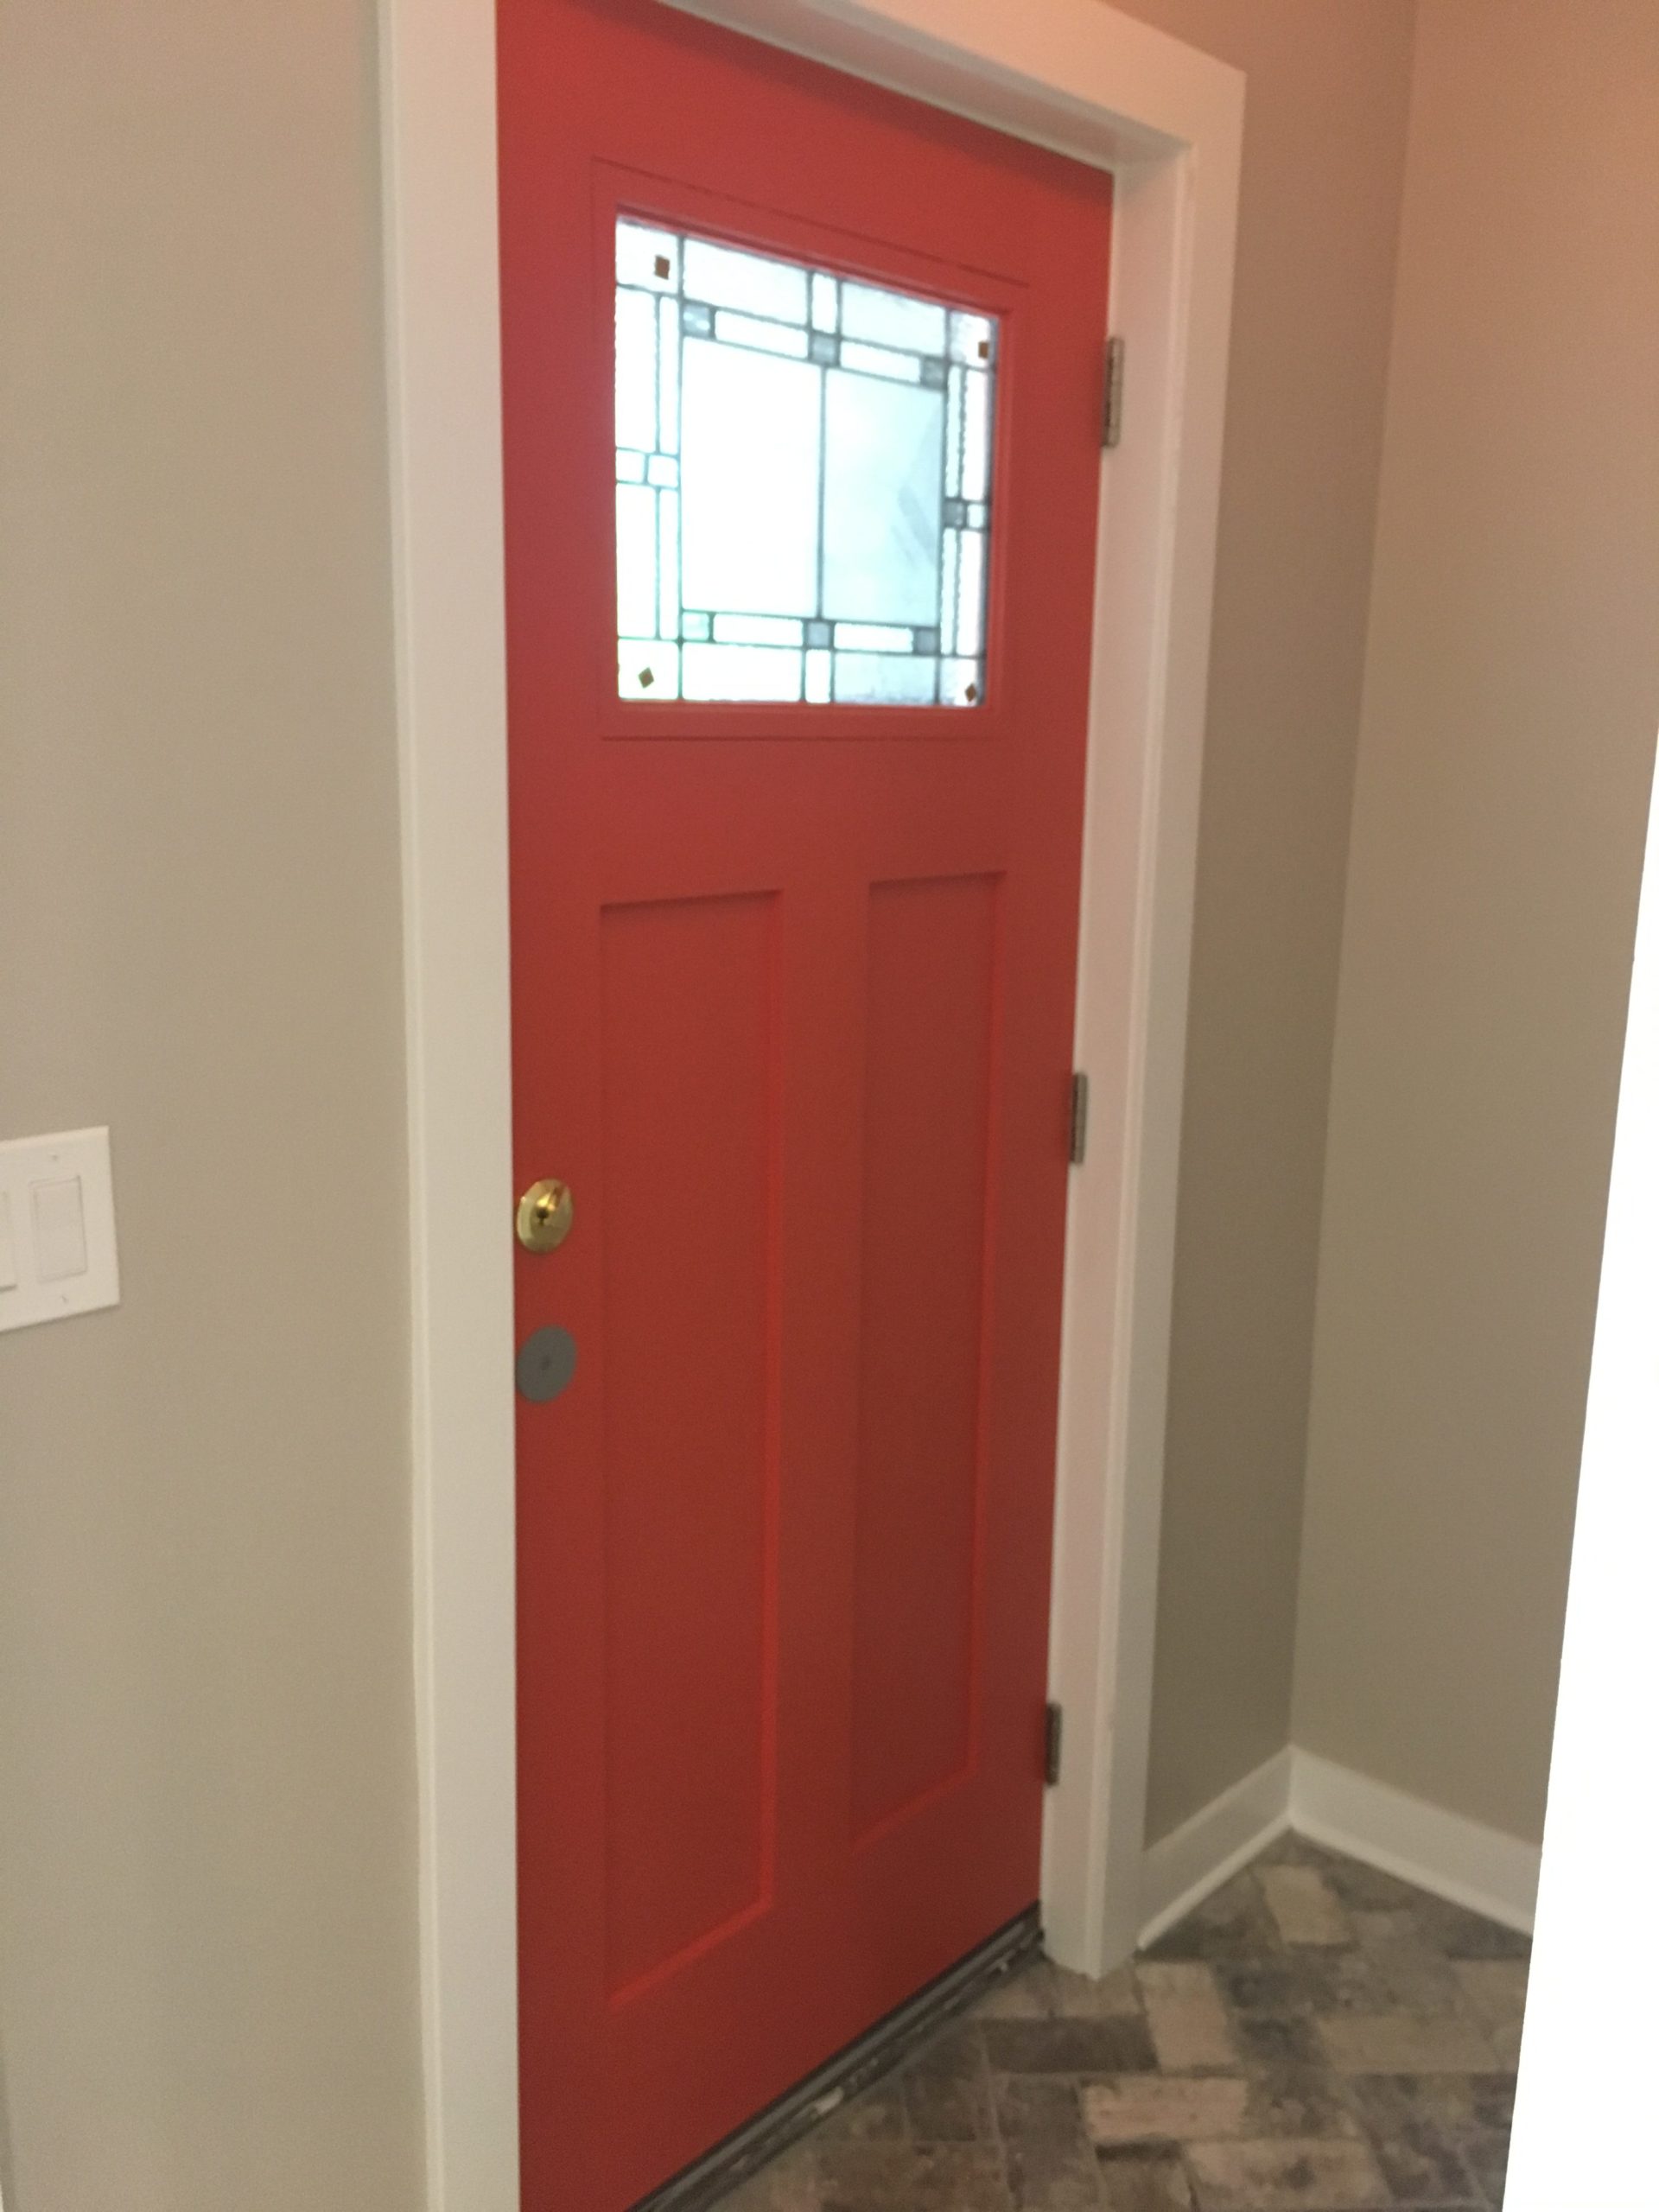 A red door viewed indoor